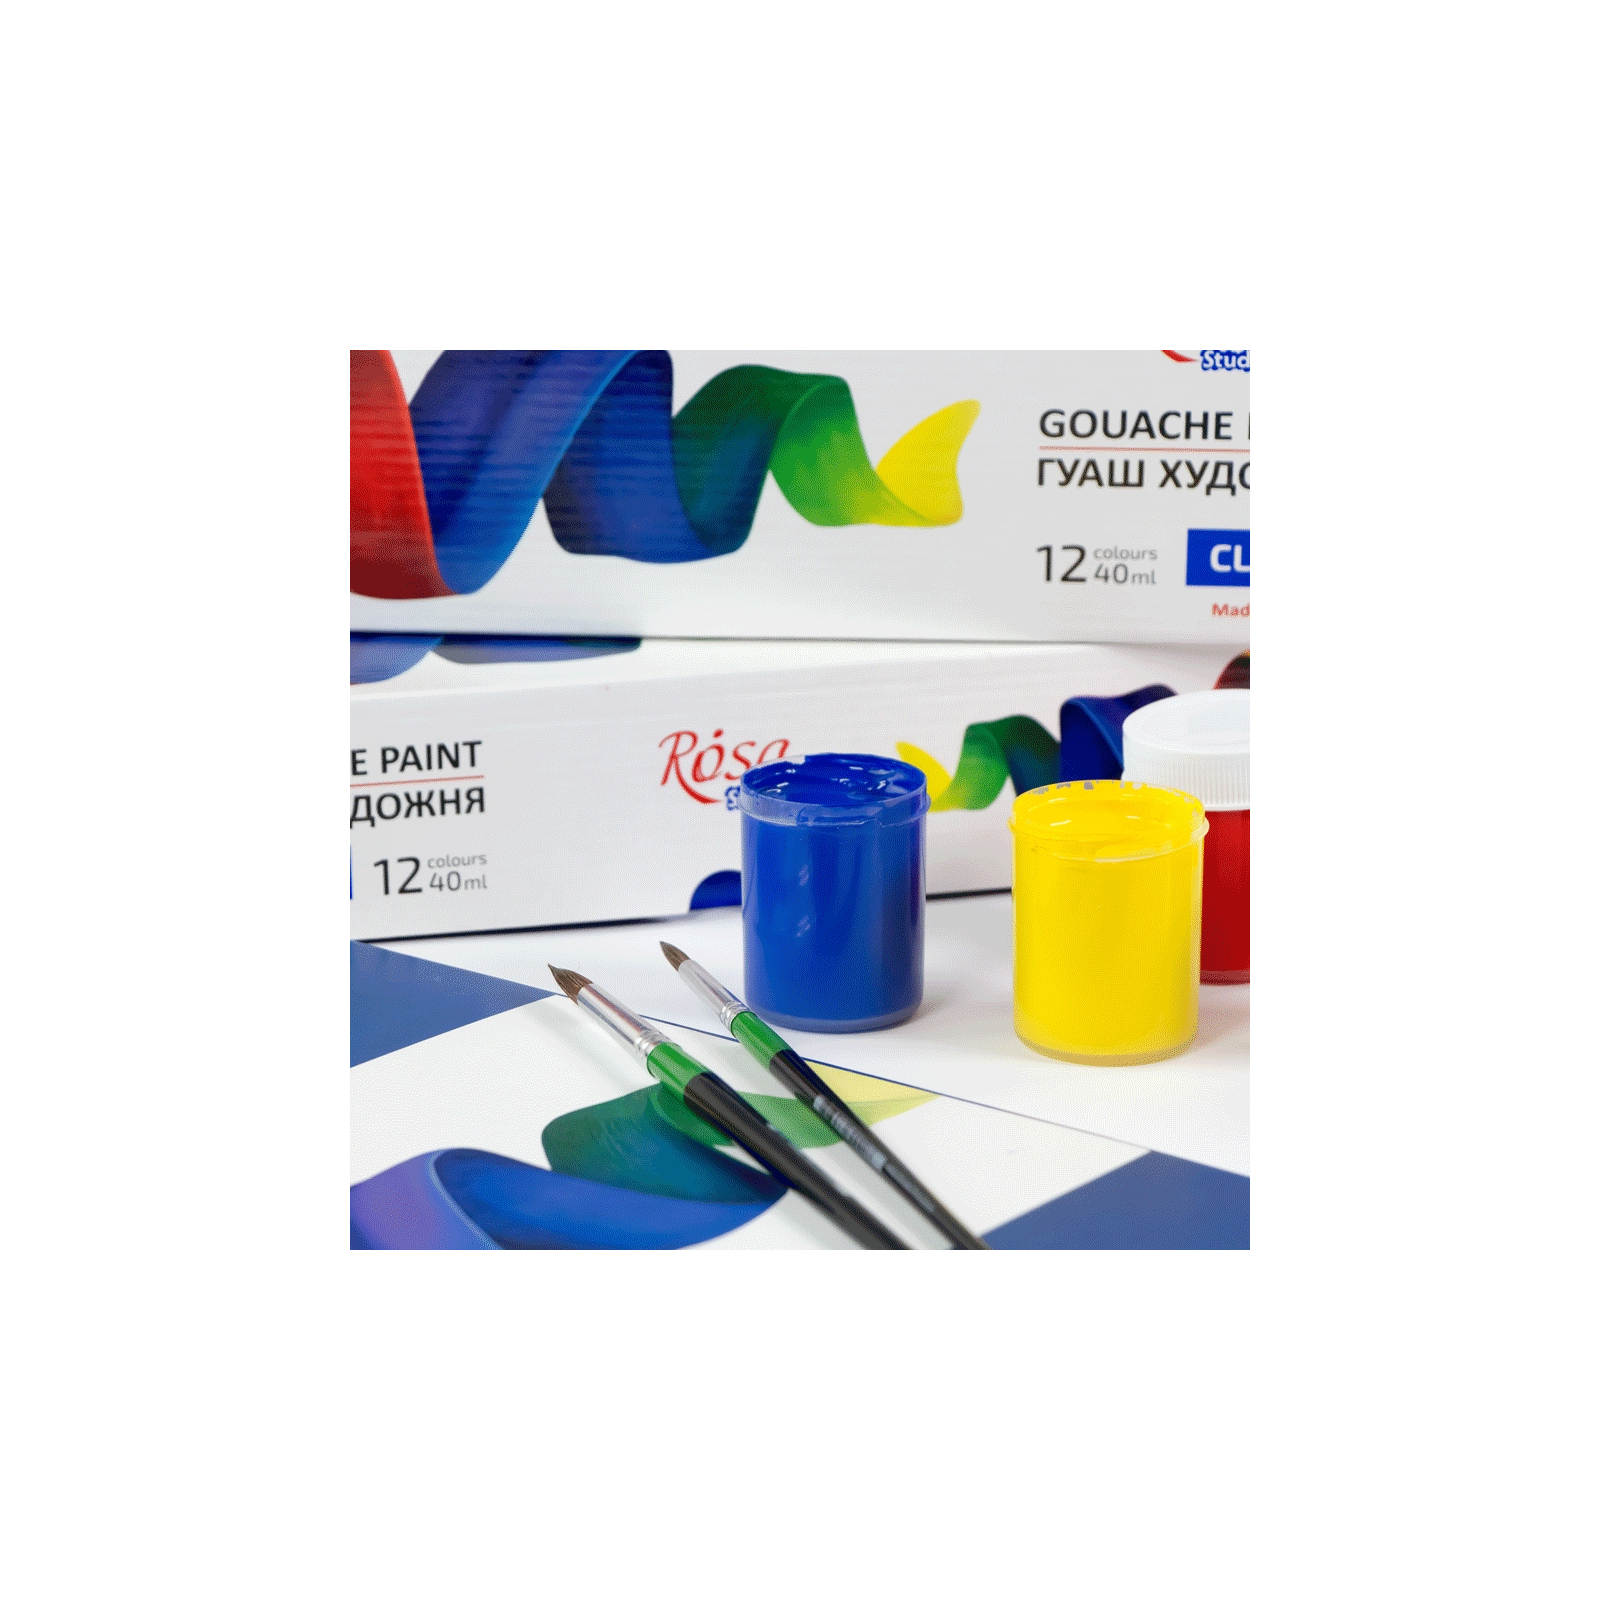 Гуашевые краски Rosa Studio Classic 12 цветов 40 мл special box (4823098531616) изображение 6